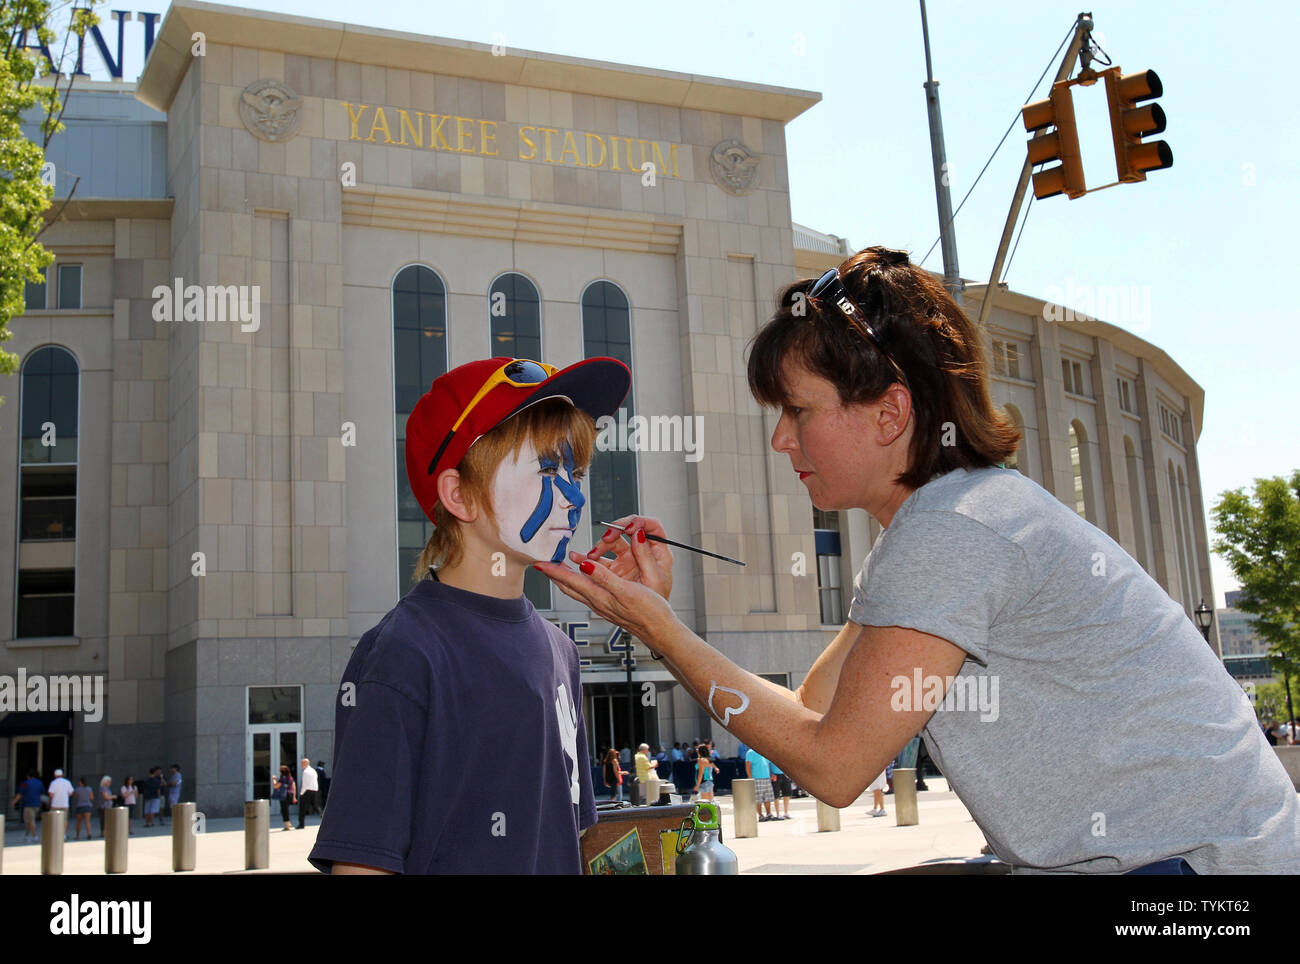 Gina Allison de Waterbury CT peint le logo Yankee sur le visage de son fils chasseur devant les Indians de Cleveland jouer les Yankees de New York au Yankee Stadium de New York le 31 mai 2010. UPI/John Angelillo Banque D'Images